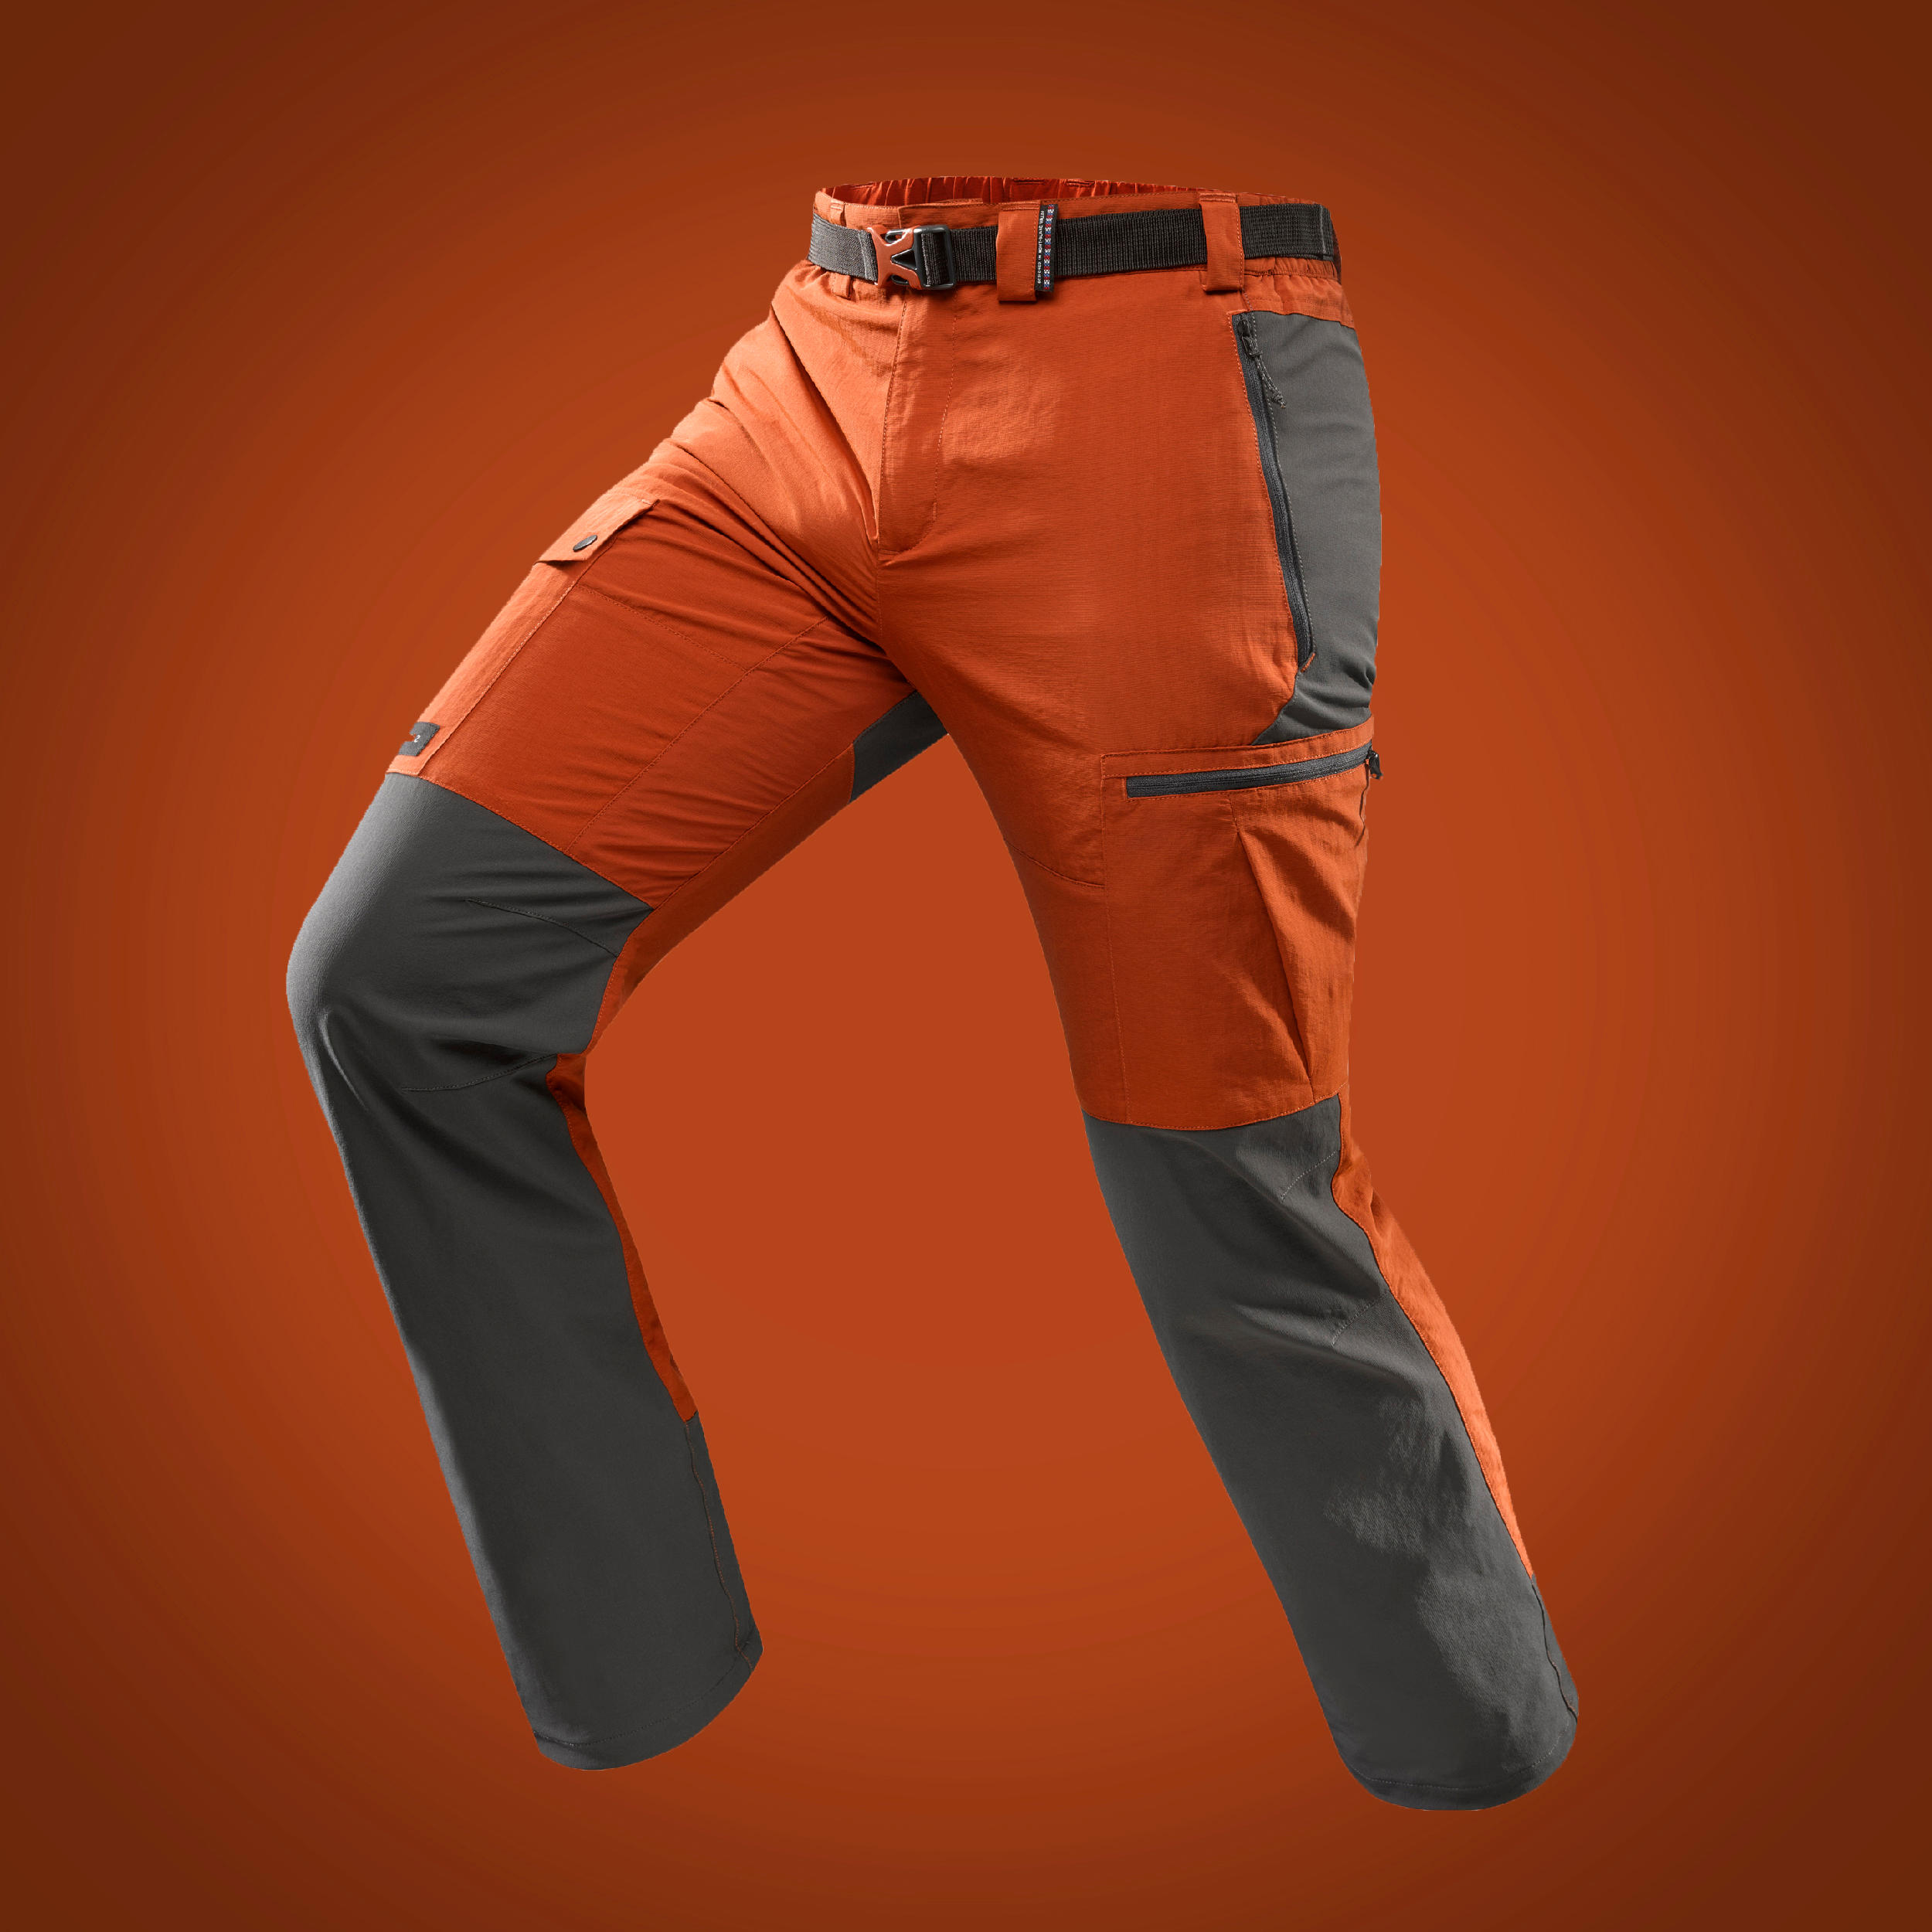 decathlon forclaz trousers